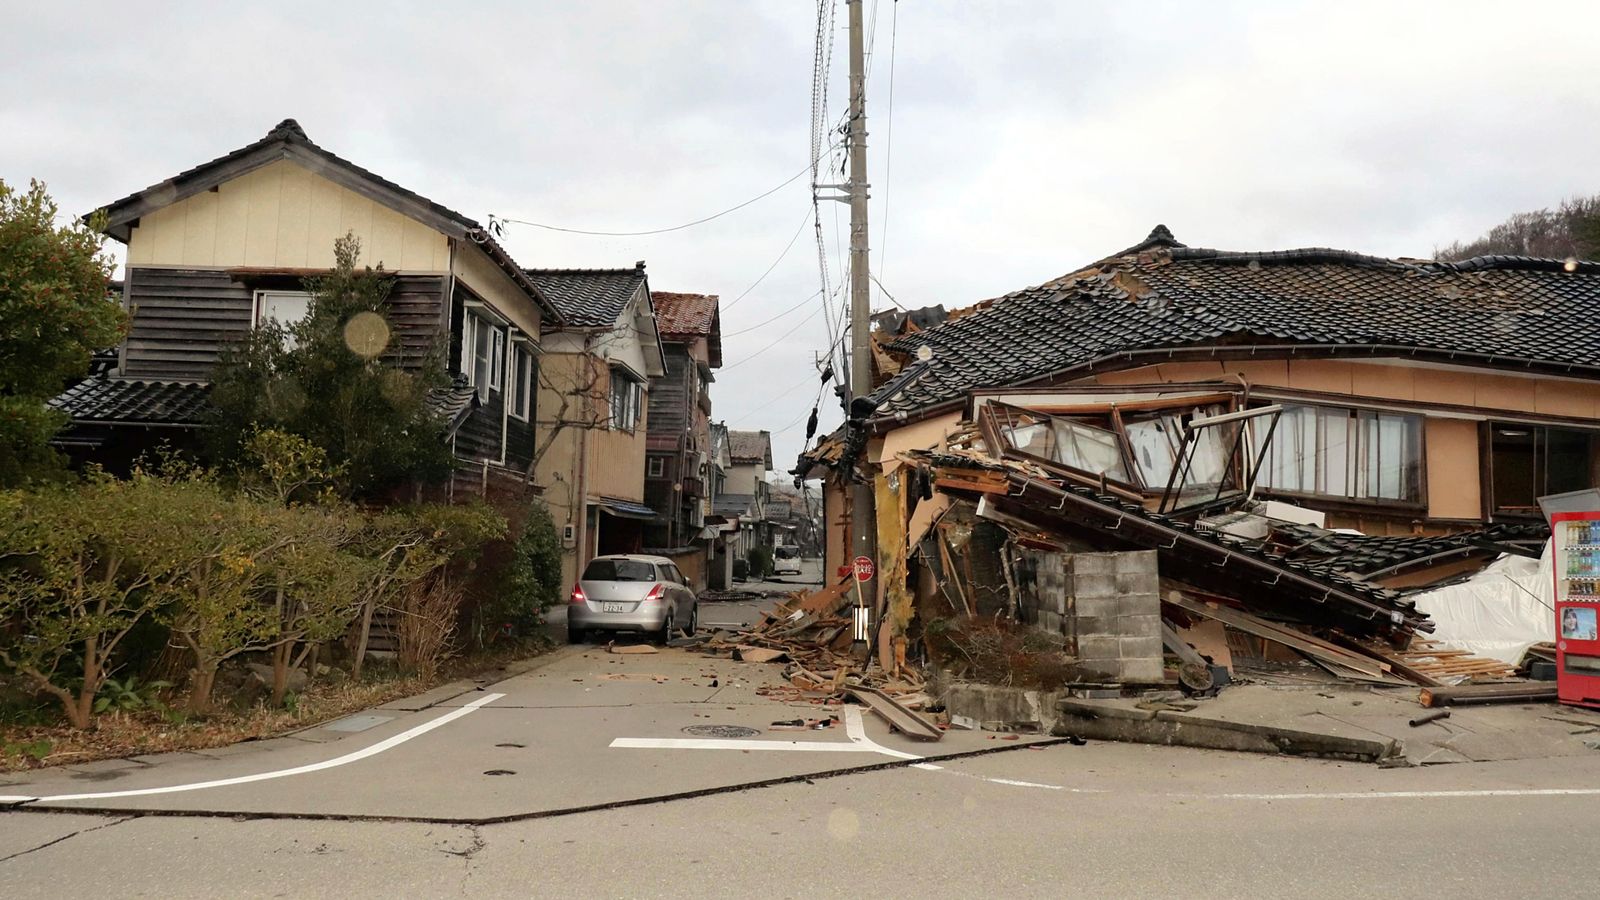 Tsunami warning issued as 7.6 magnitude earthquake hits Japan